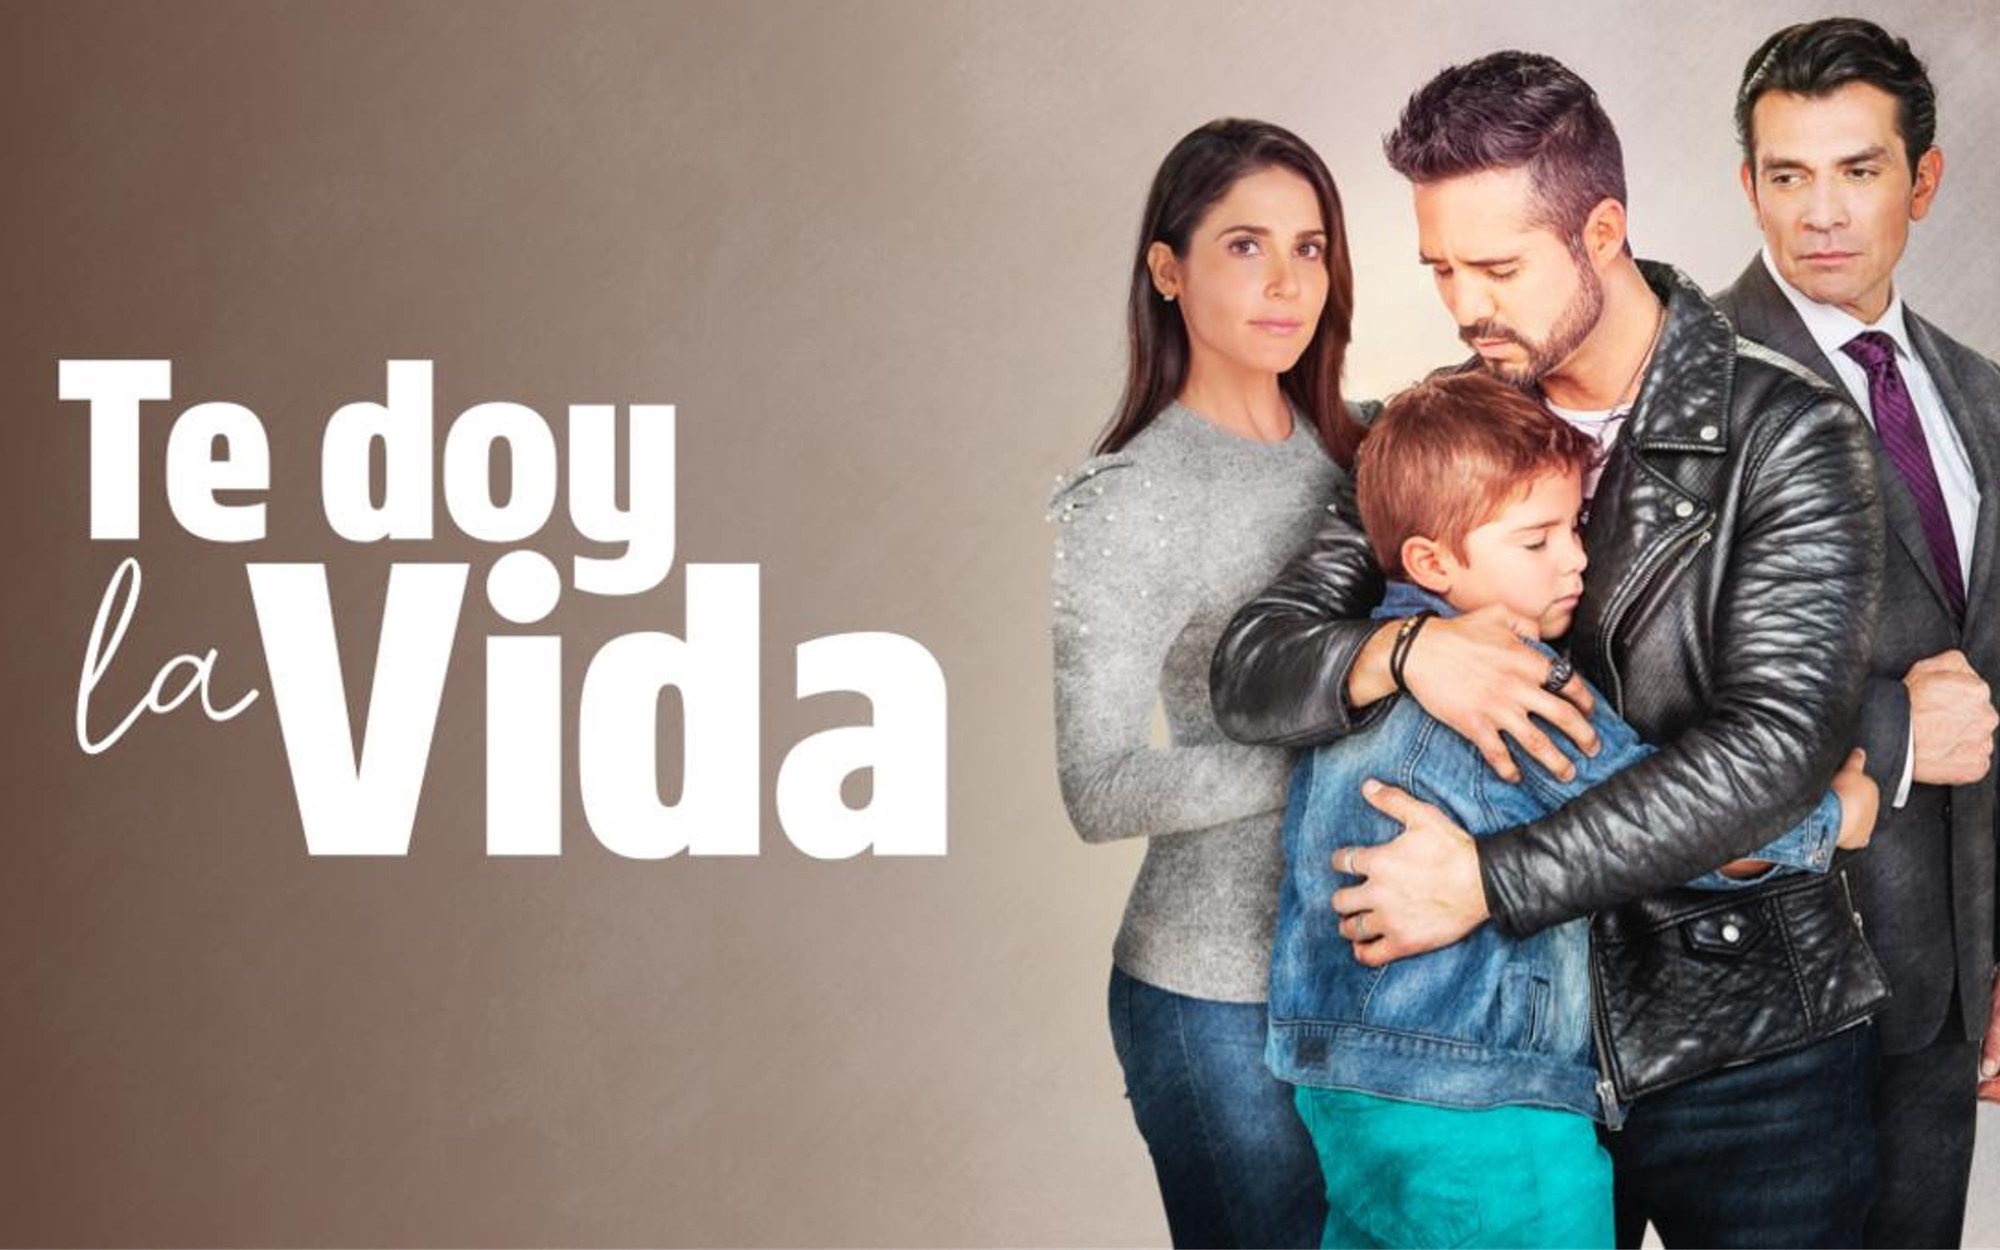 Nova ultima el estreno de 'Te doy la vida', la ficción en español más vista de EEUU